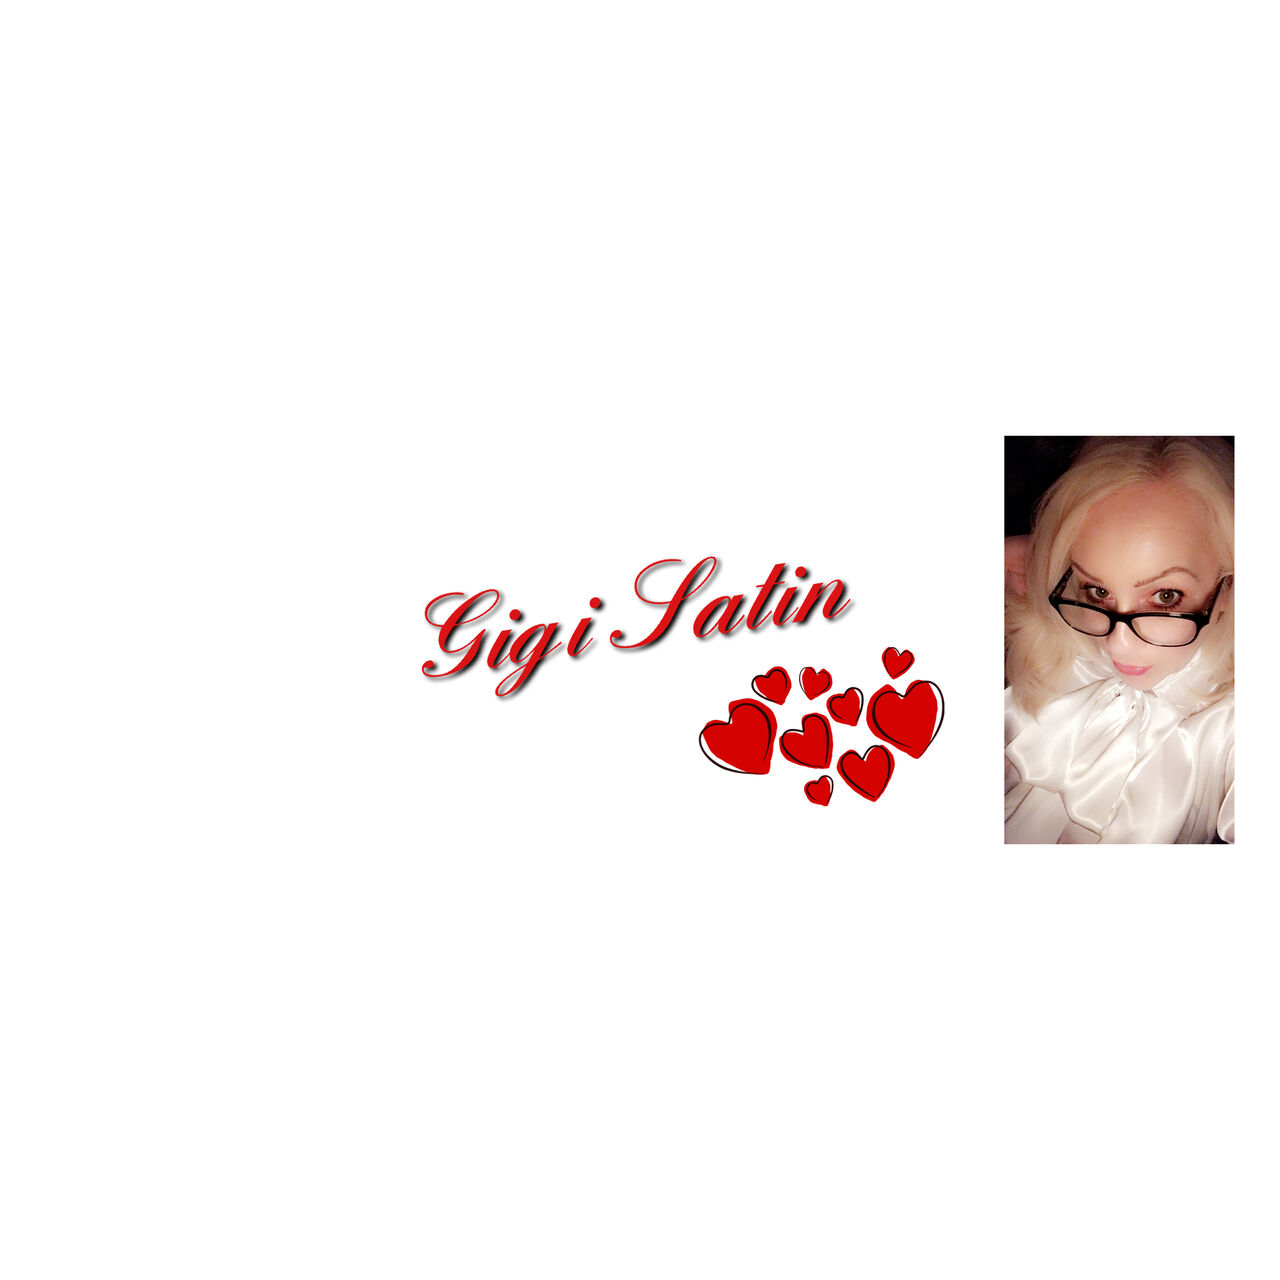 See Gigi Satin FREE profile